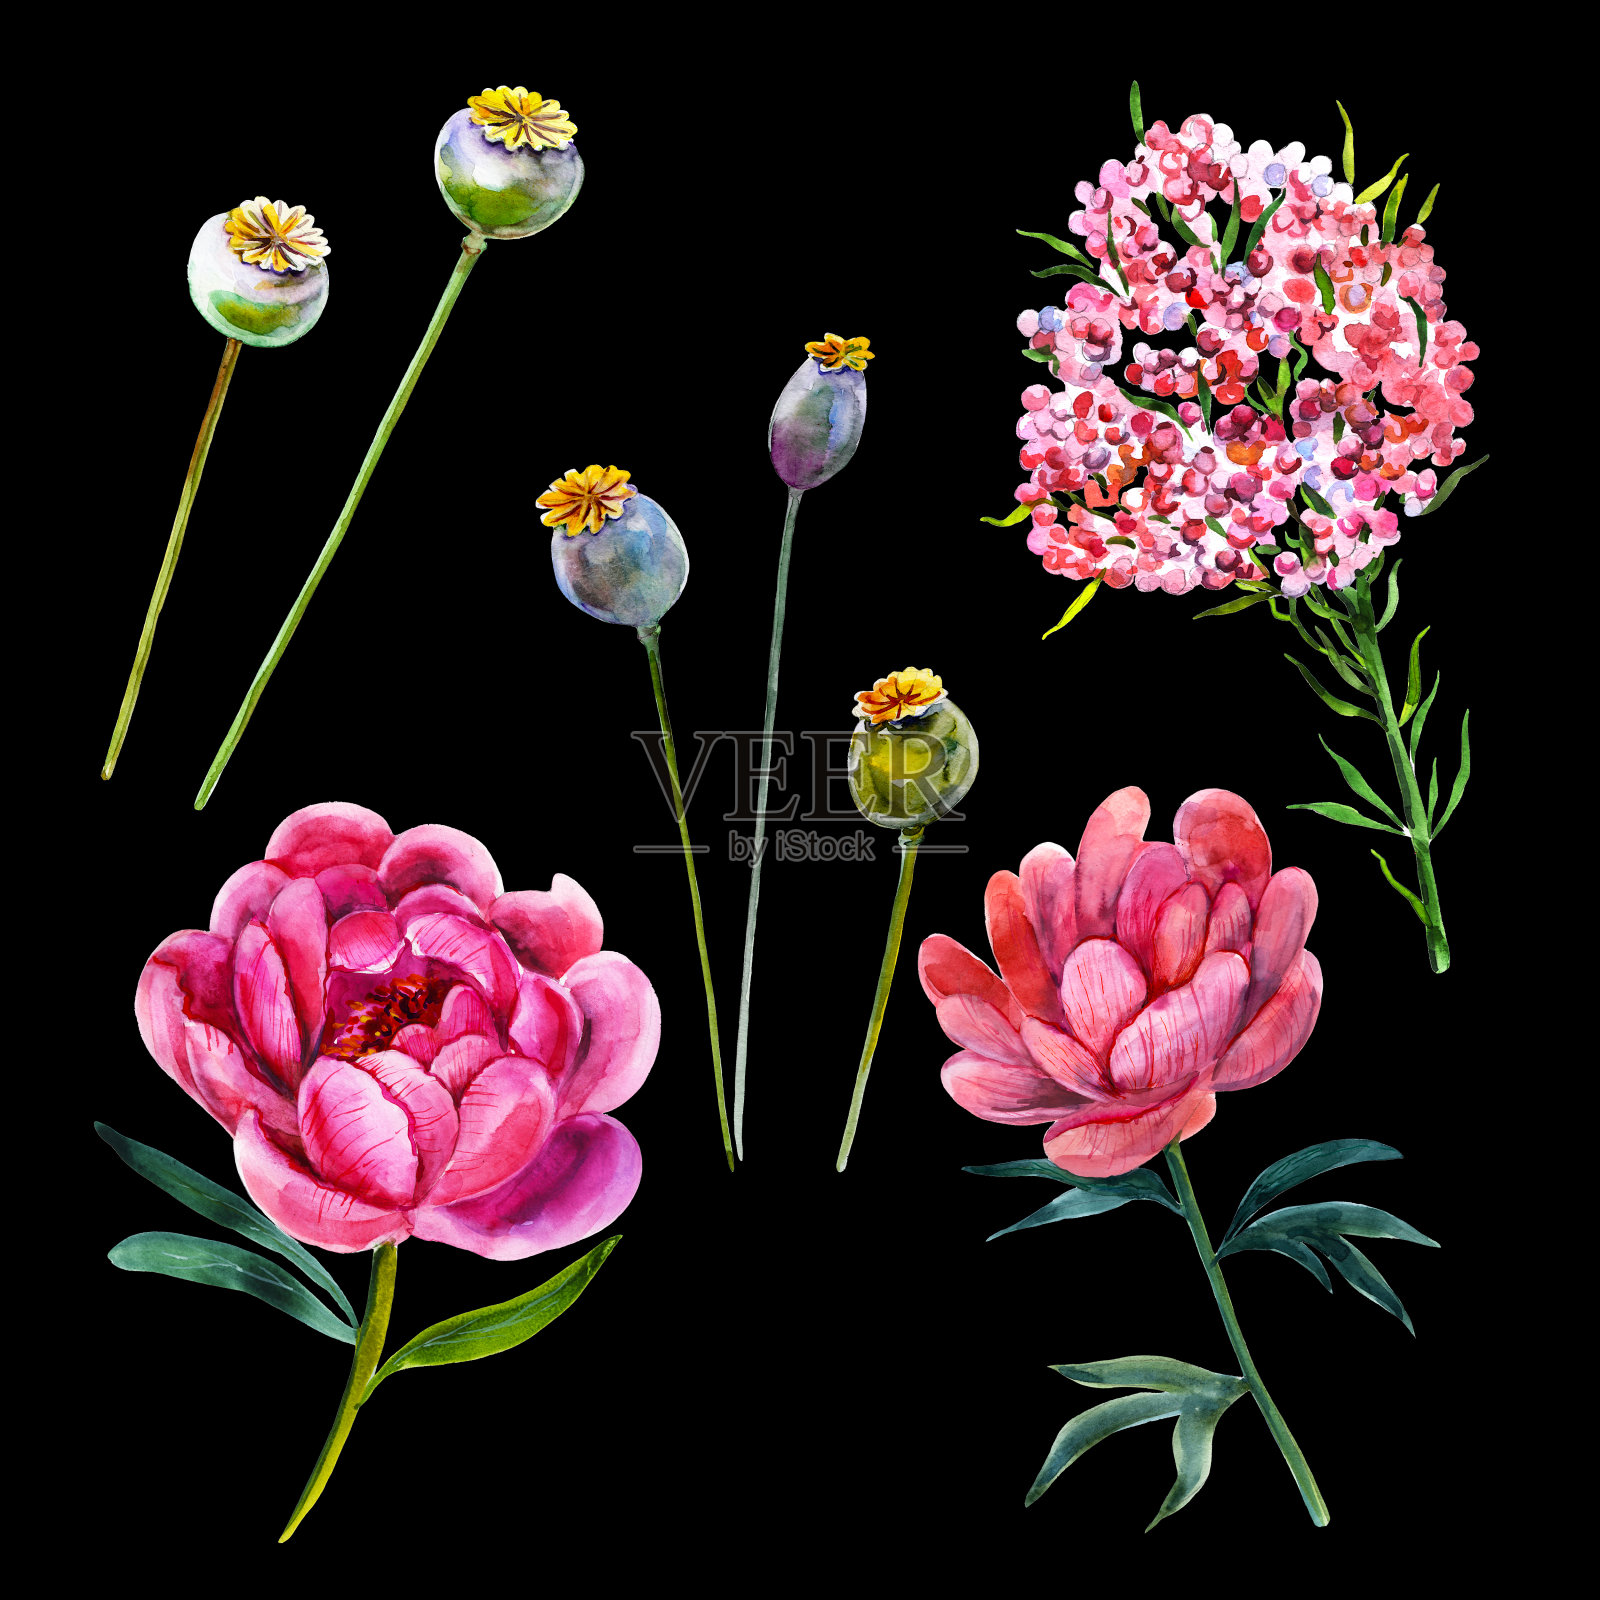 粉红色牡丹罂粟荚和稻花手绘水彩花卉插图一套。贺卡、婚礼请柬、节日、情人节设计元素。孤立的对象。插画图片素材